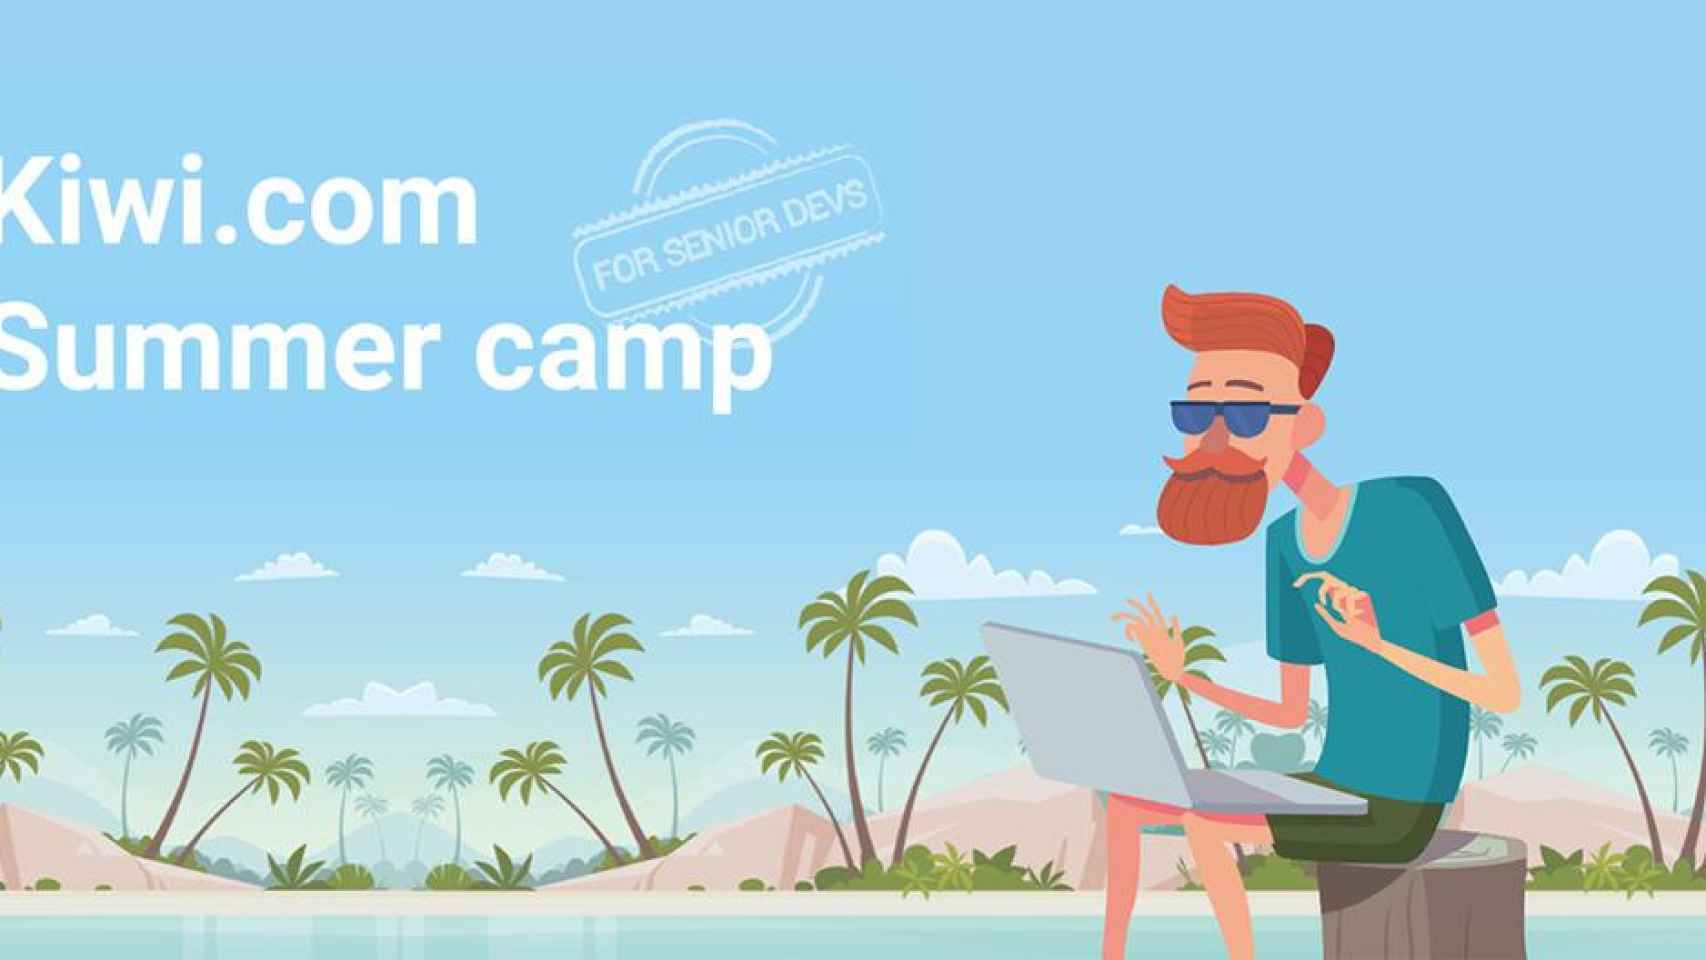 Imagen promocional del campamento de verano para desarrolladores / KIWI.COM